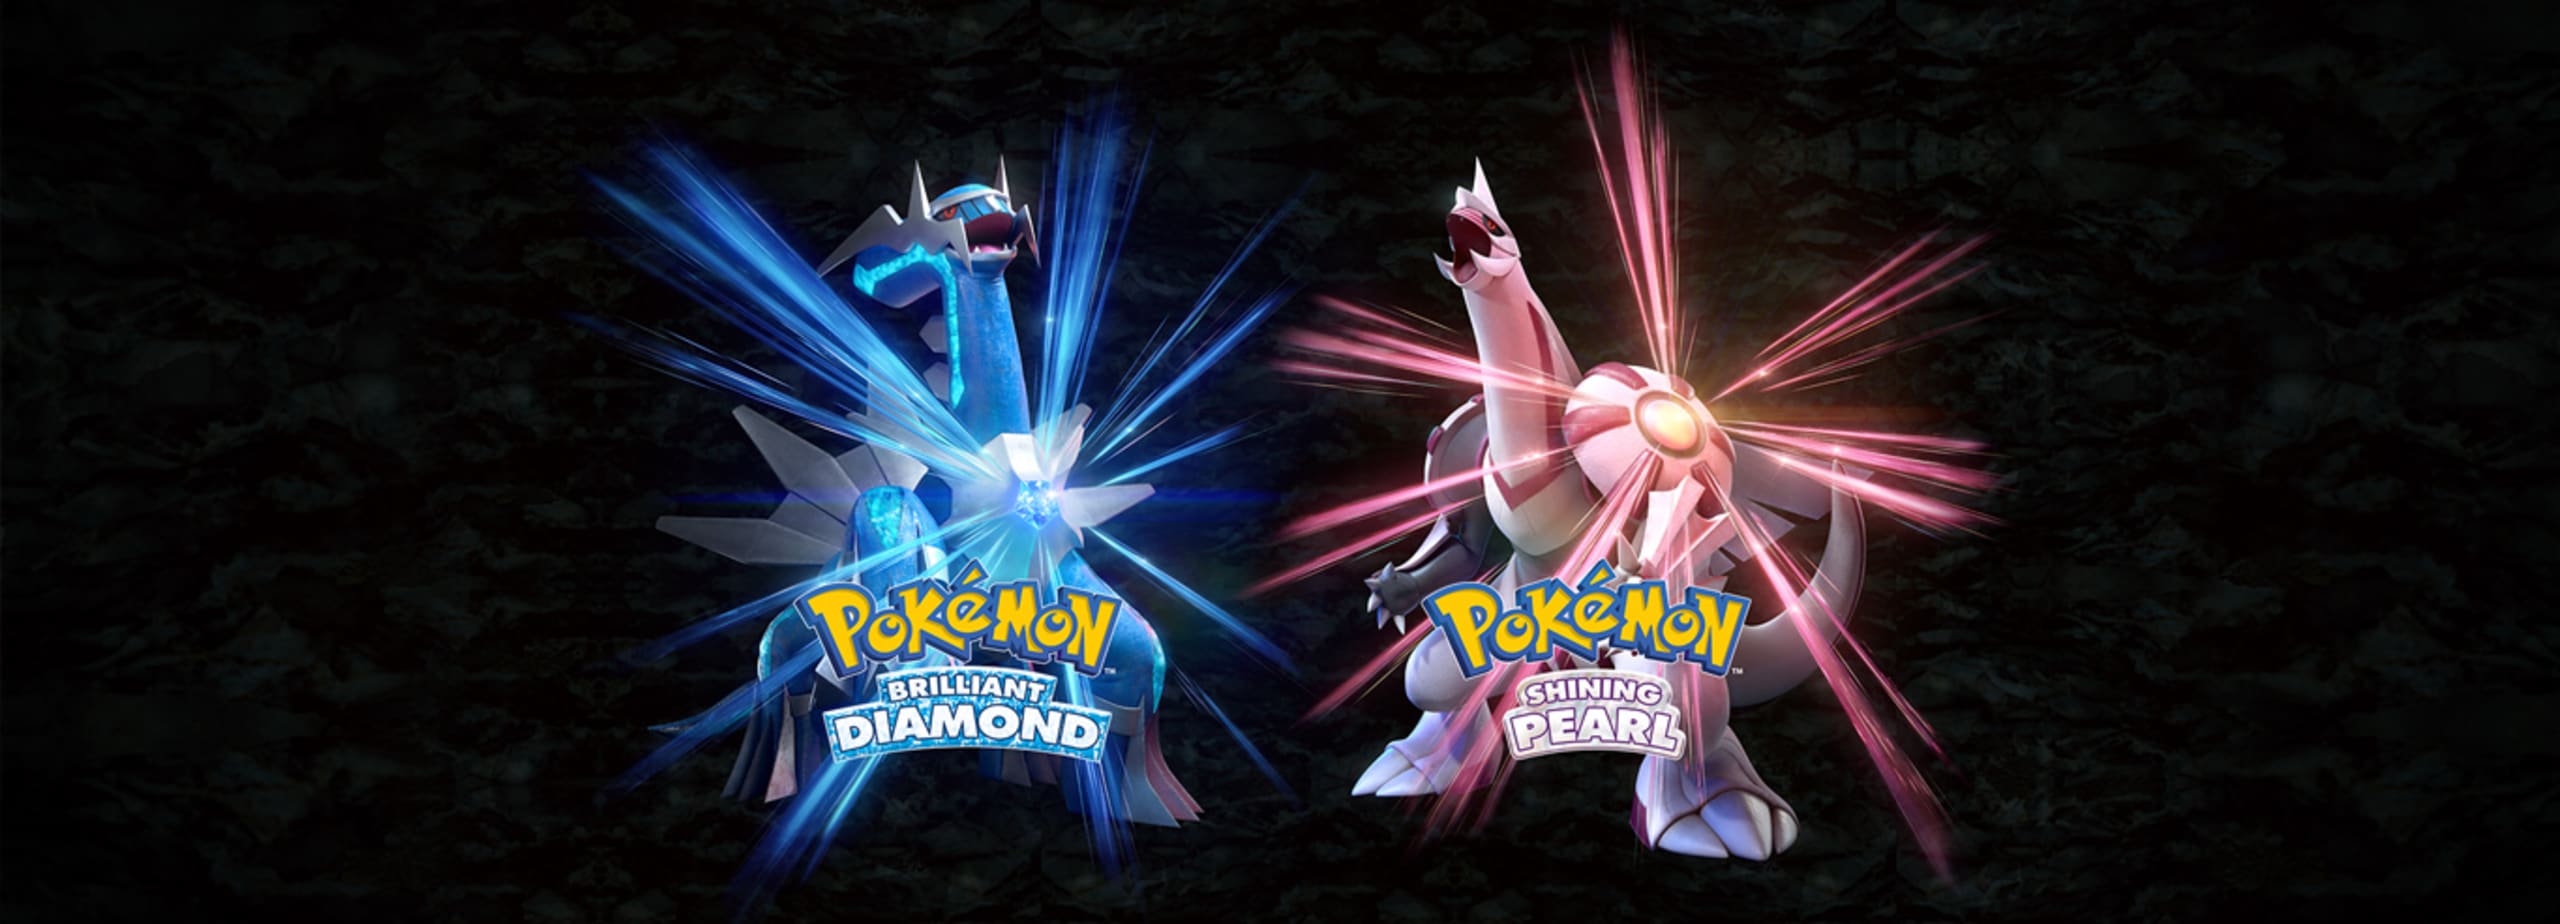 Pokemon Brilliant Diamond & Pokemon Shining Pearl - Já disponível